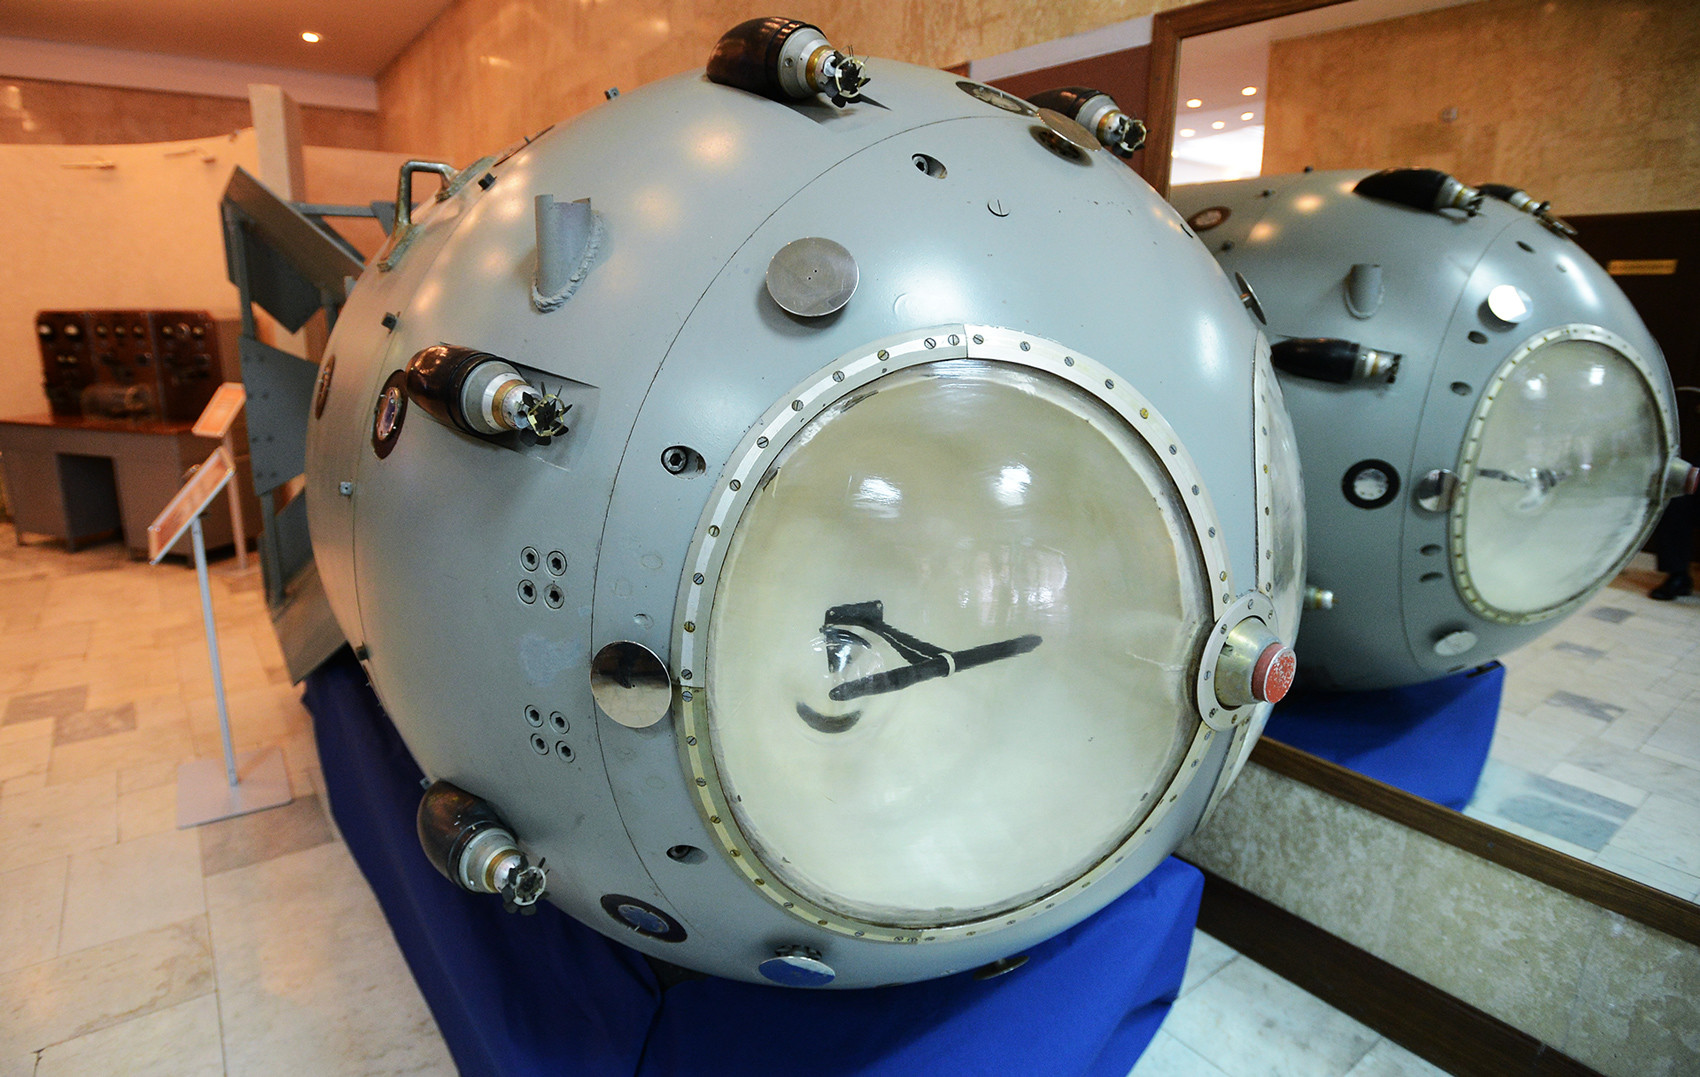 Model prve sovjetske atomske bombe RDS-01, izložen u Ruskom federalnom nuklearnom centru (Sveruskom znanstveno-istraživačkom institutu za eksperimentalnu fiziku) u ruskom gradu Sarovu.

